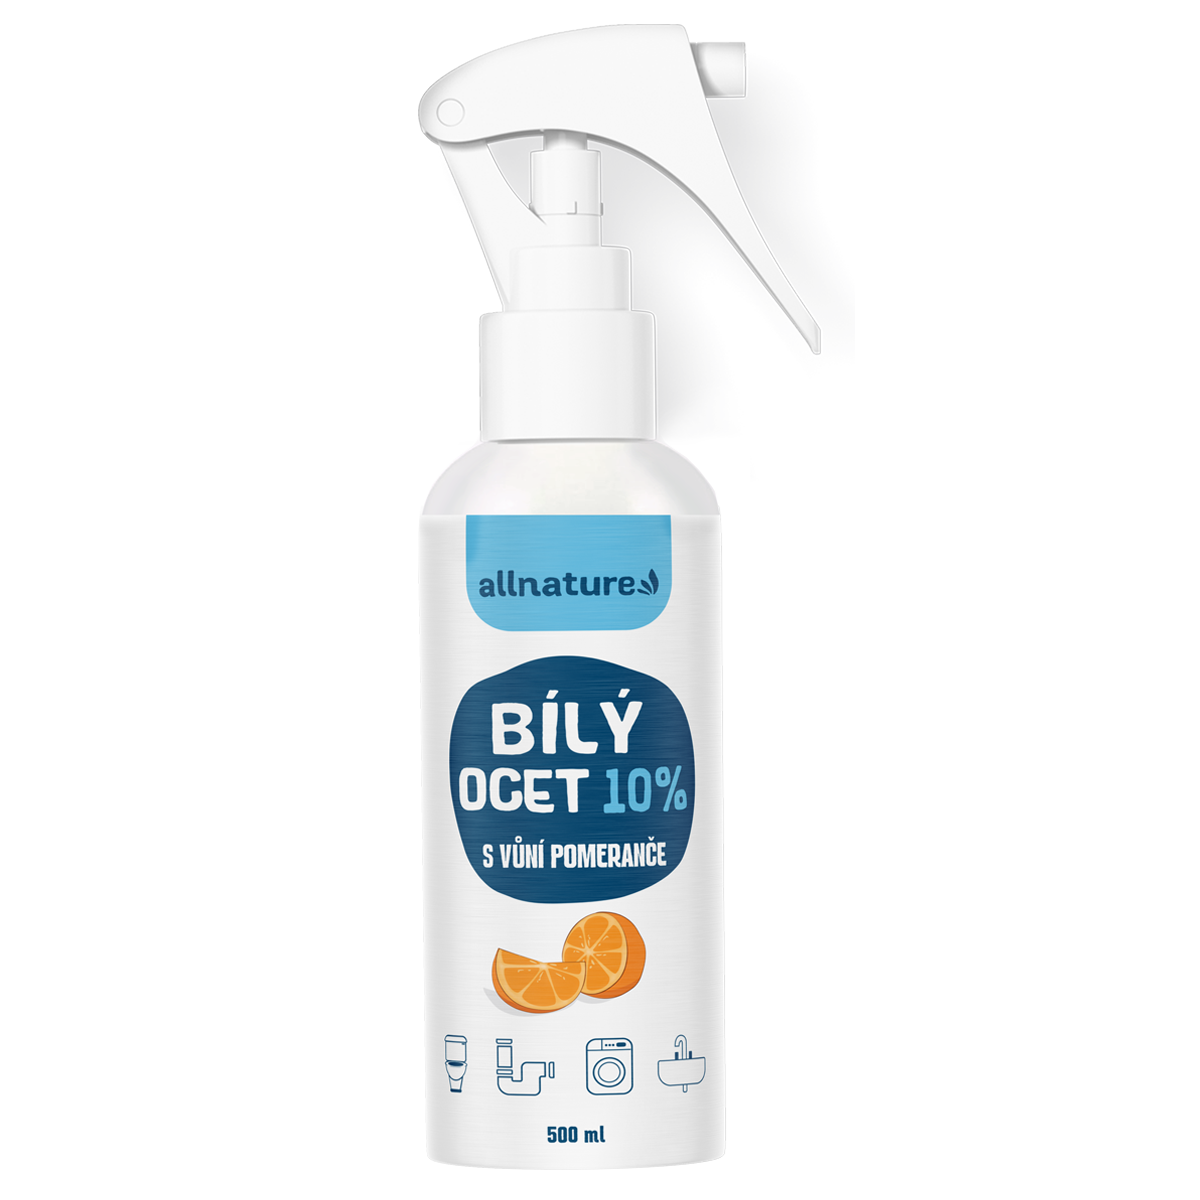 Allnature Bílý ocet sprej 10% s vůní pomeranče (500 ml) - univerzální přírodní čistič Allnature